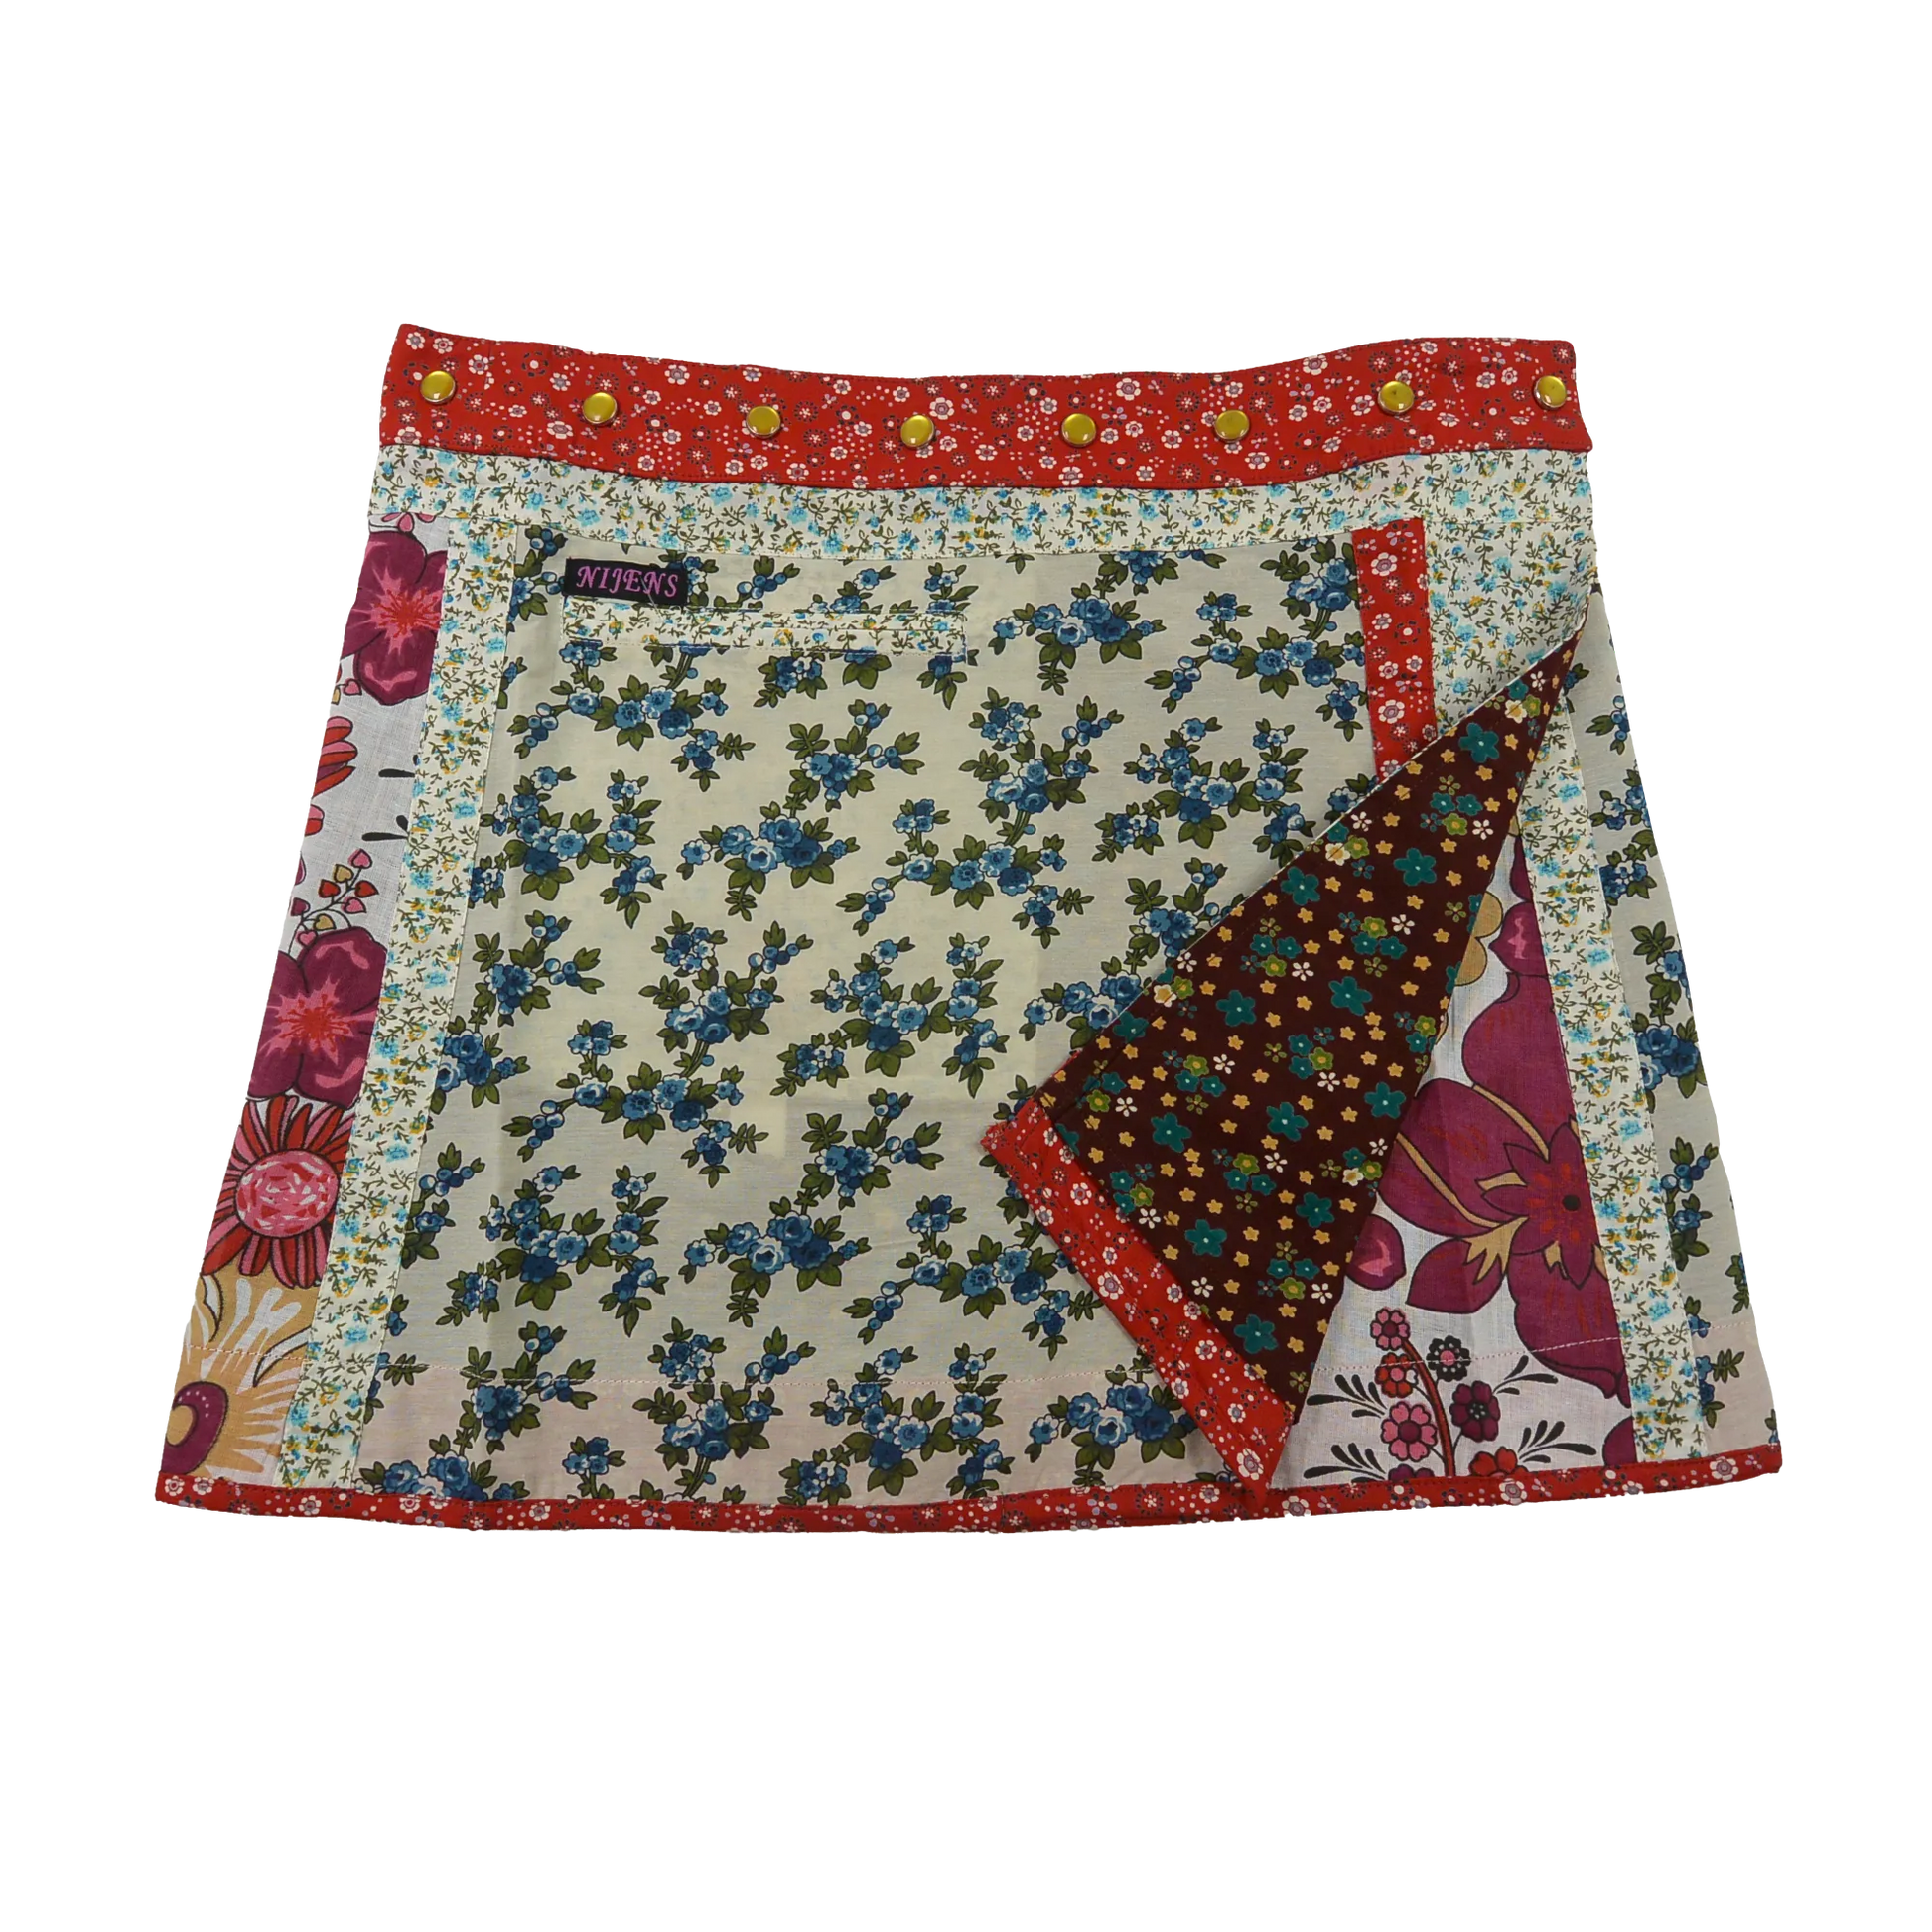 Wenderock aus Baumwolle mit Blumenmuster (weiß, rot) mit kleinem Einsteckfach vorne. Umfang ist einstellbar mit gläsernen Druckknöpfen am Rockbund. Muster und Farbenmix.